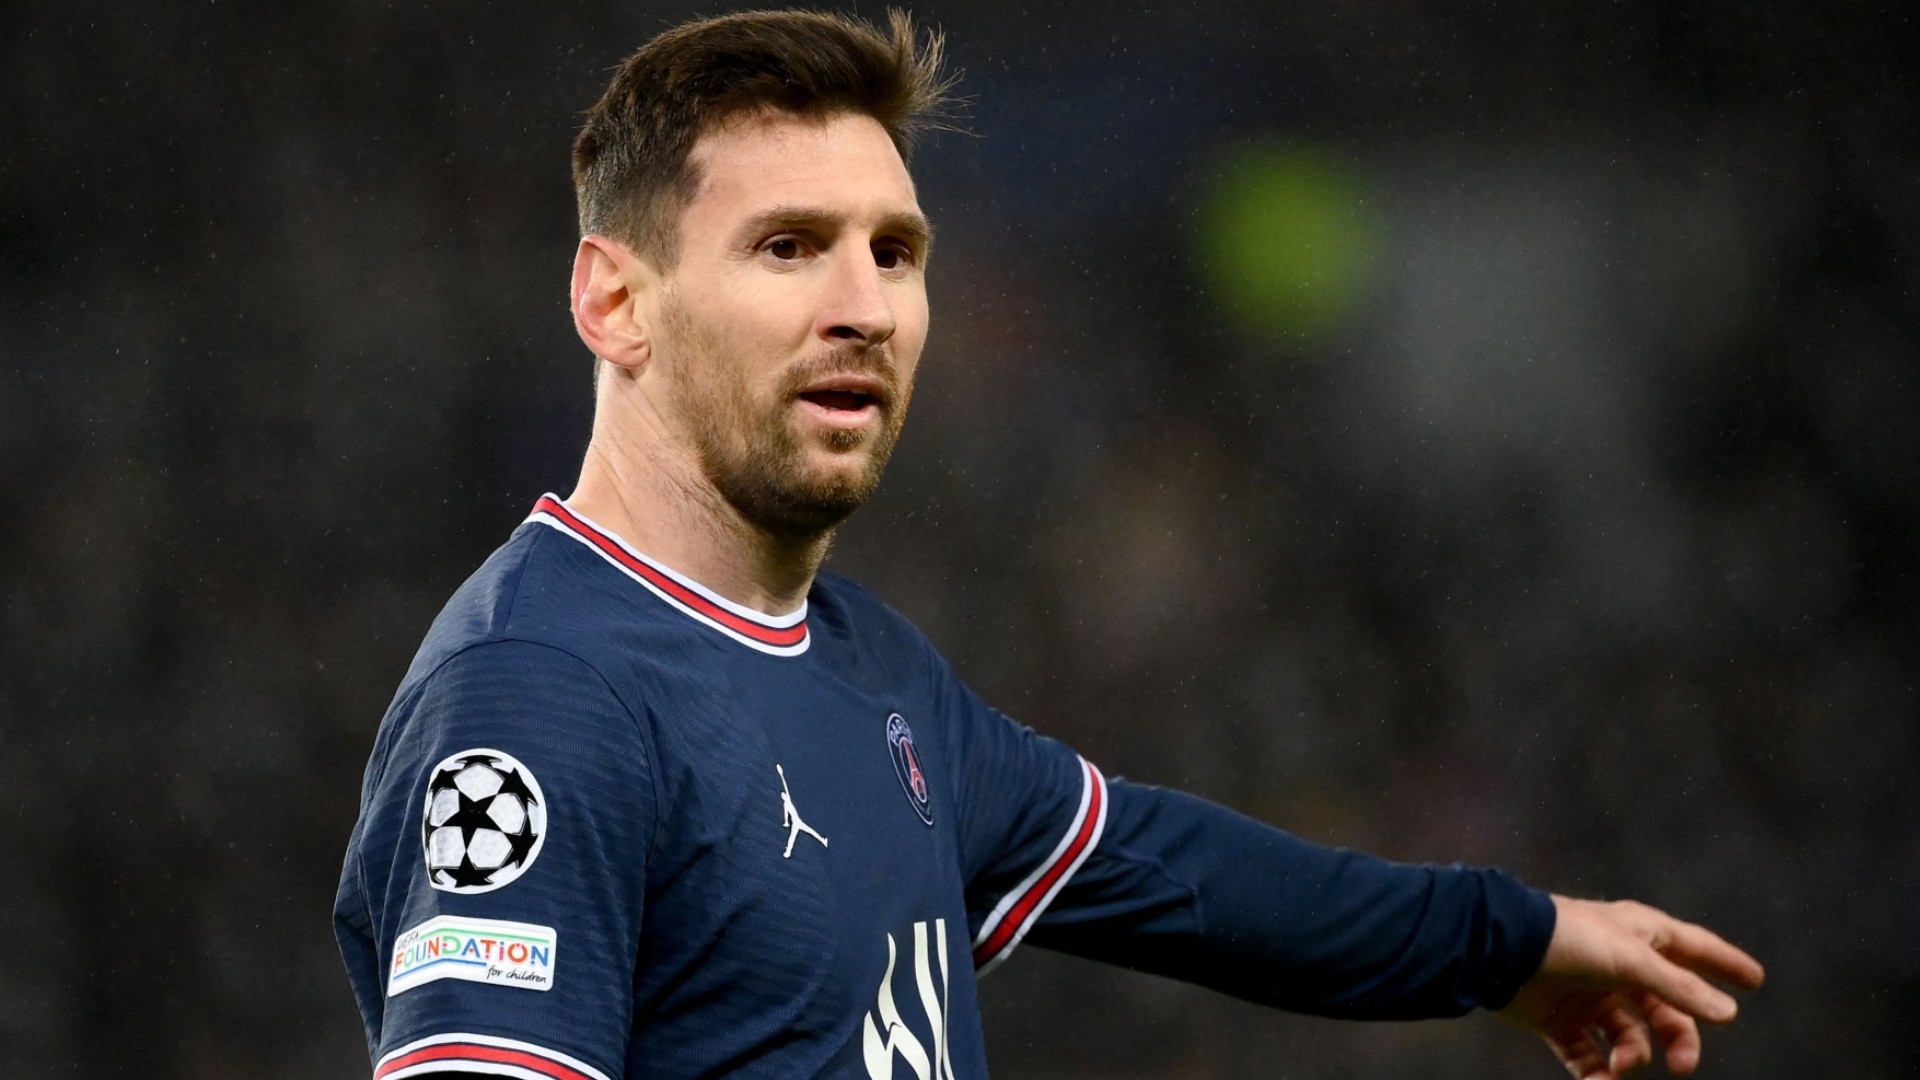 PSG de Messi kadro dışı bırakıldı